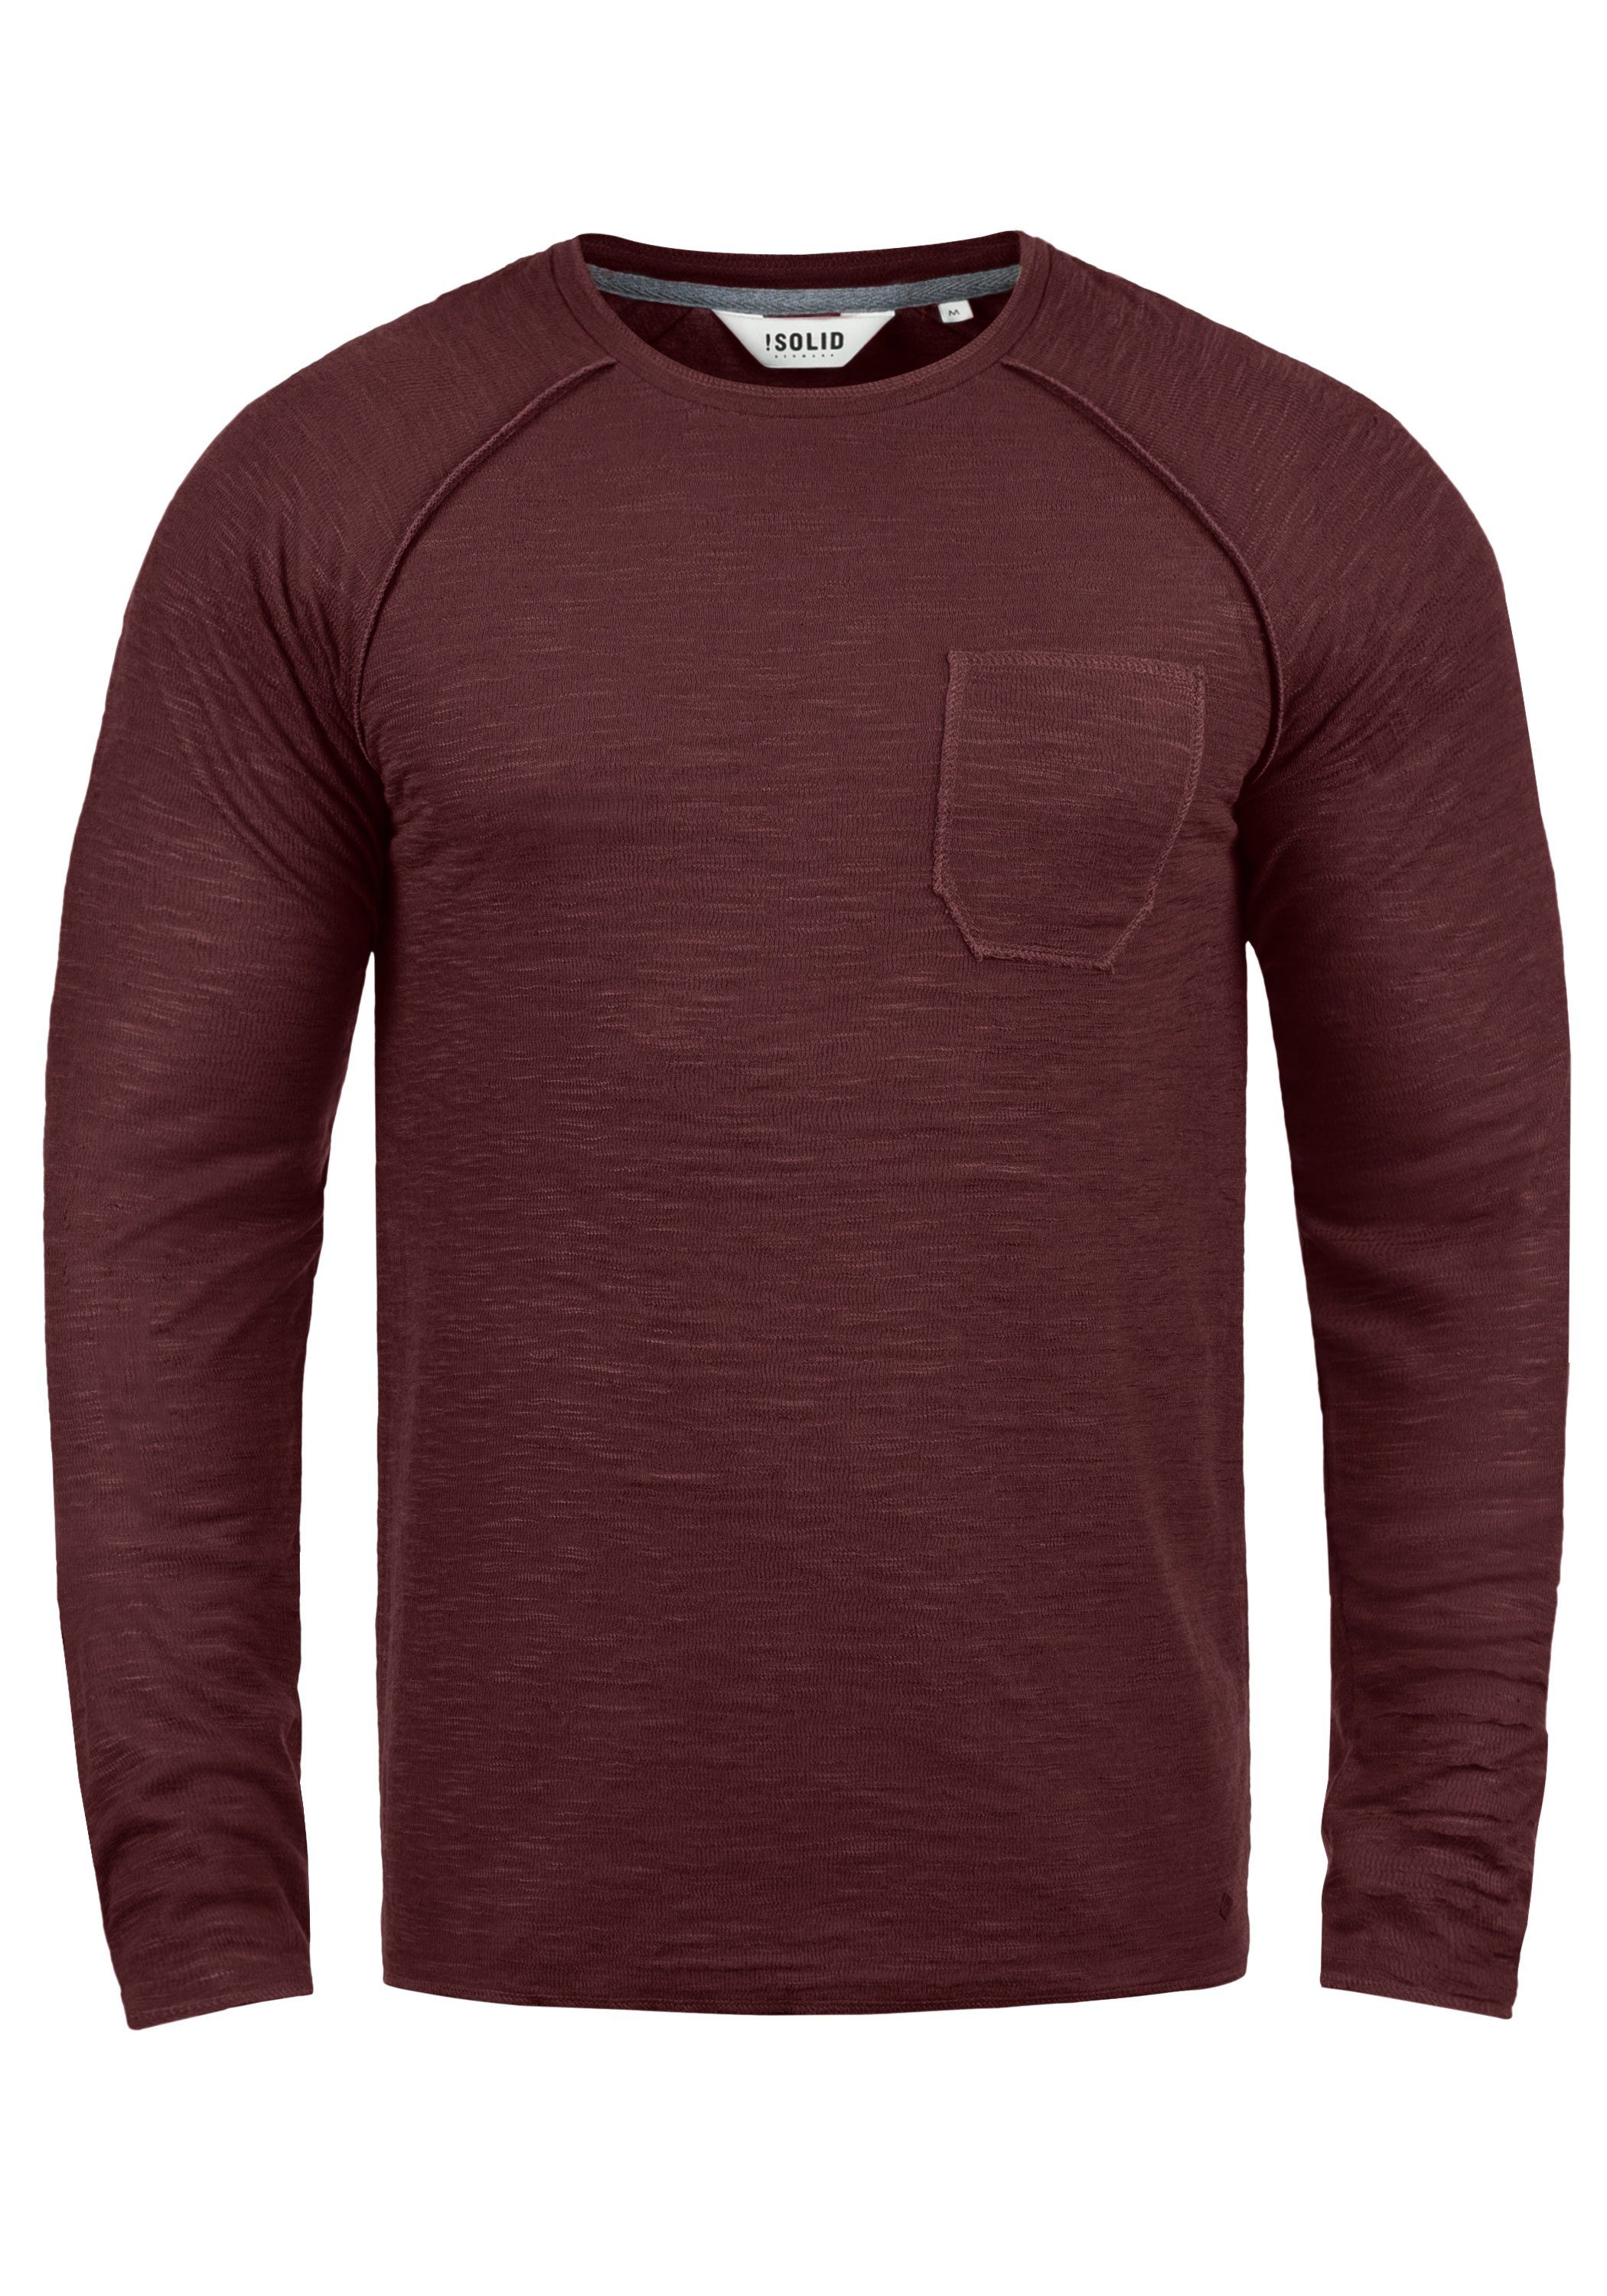 !Solid Sweatshirt SDDon Sweatpullover mit Brusttasche Wine Red (0985)